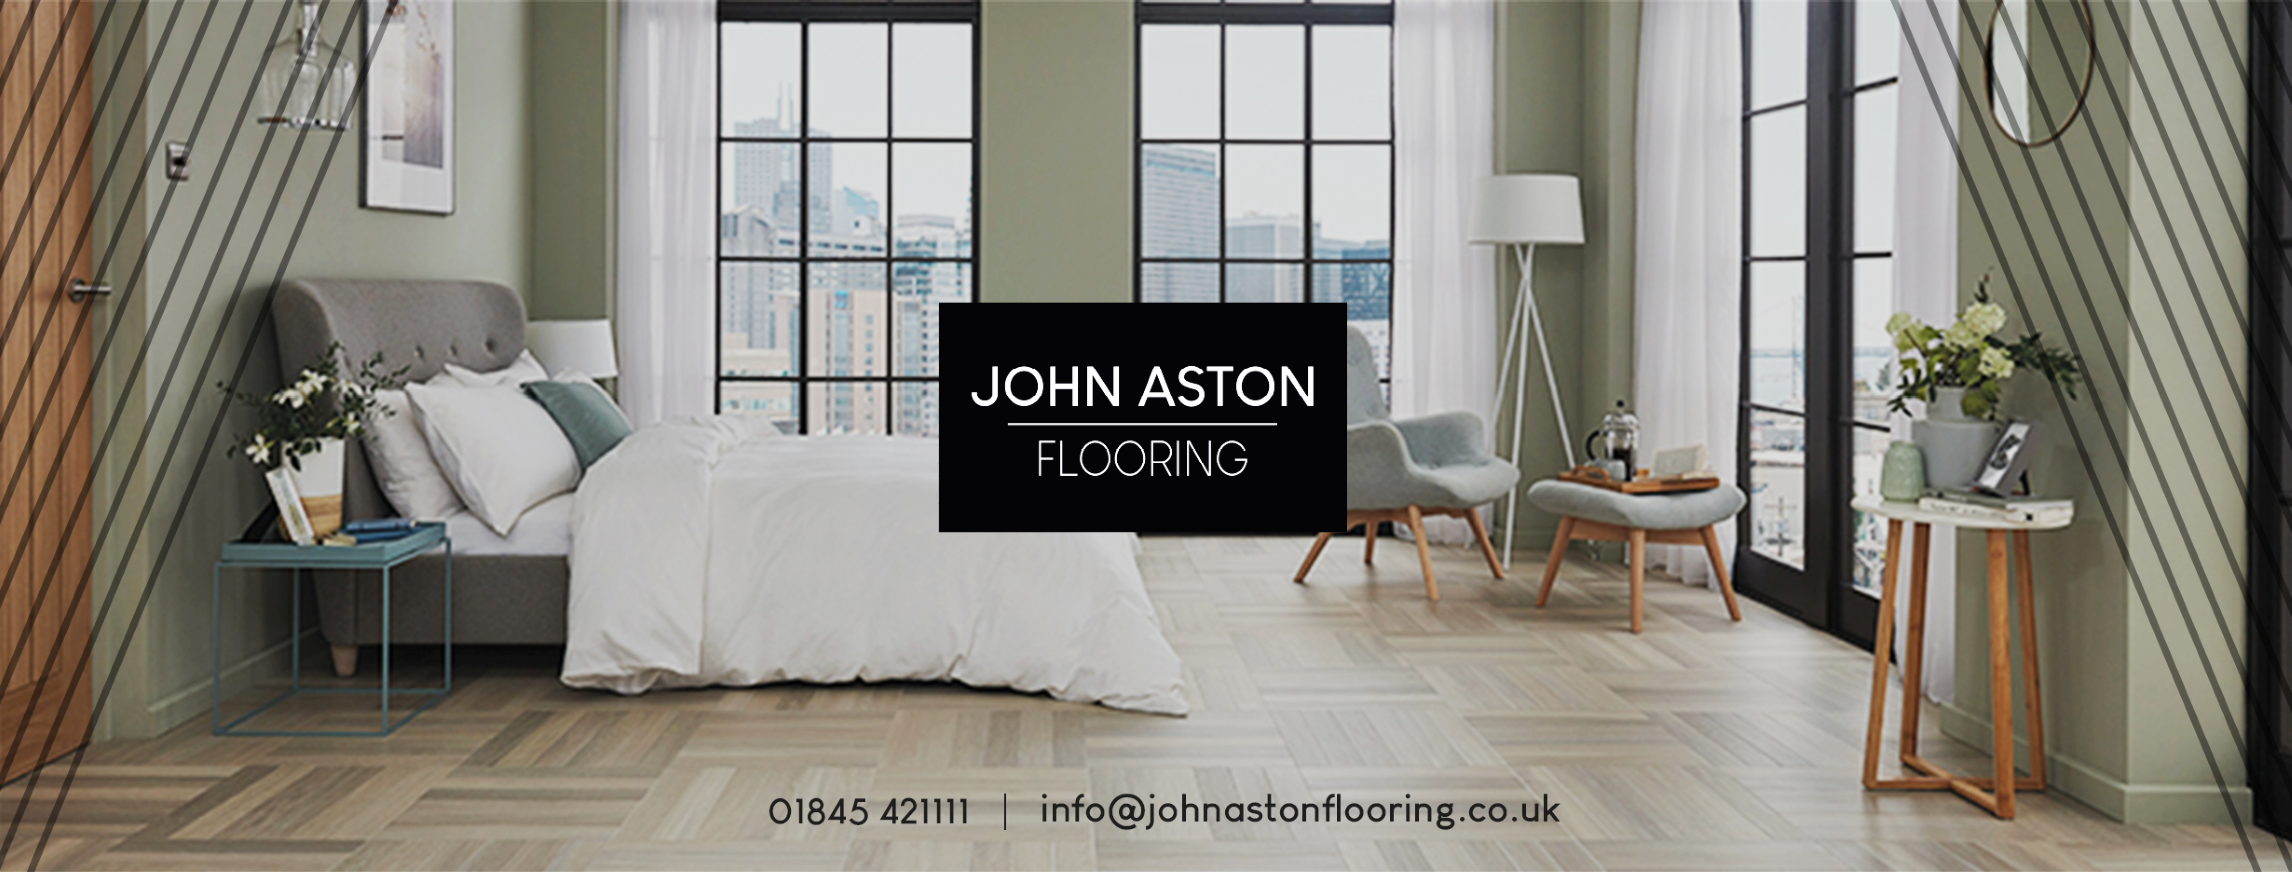 John Aston Flooring